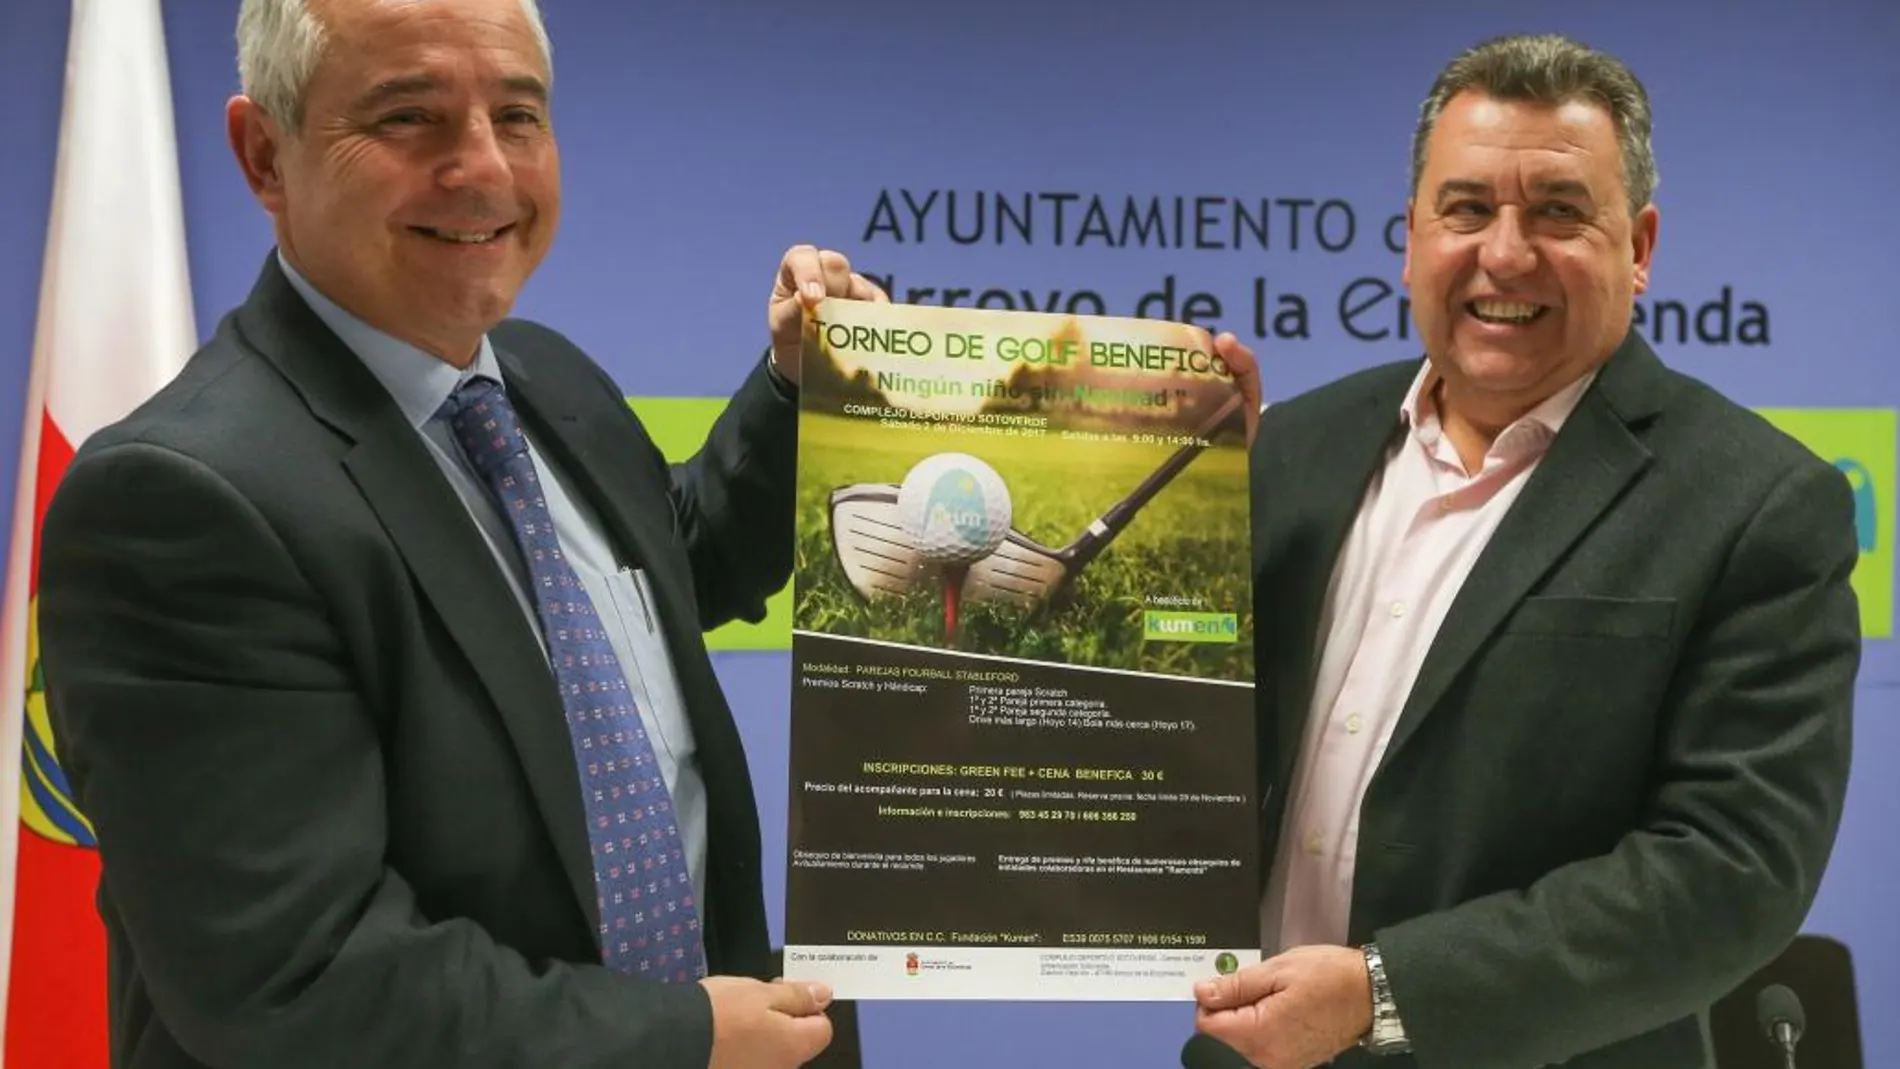 El presidente de la Fundación Kumen, Alberto Pérez Soto, y el alcalde de Arroyo, José Manuel Barrio, presentan el torneo de golf benéfico